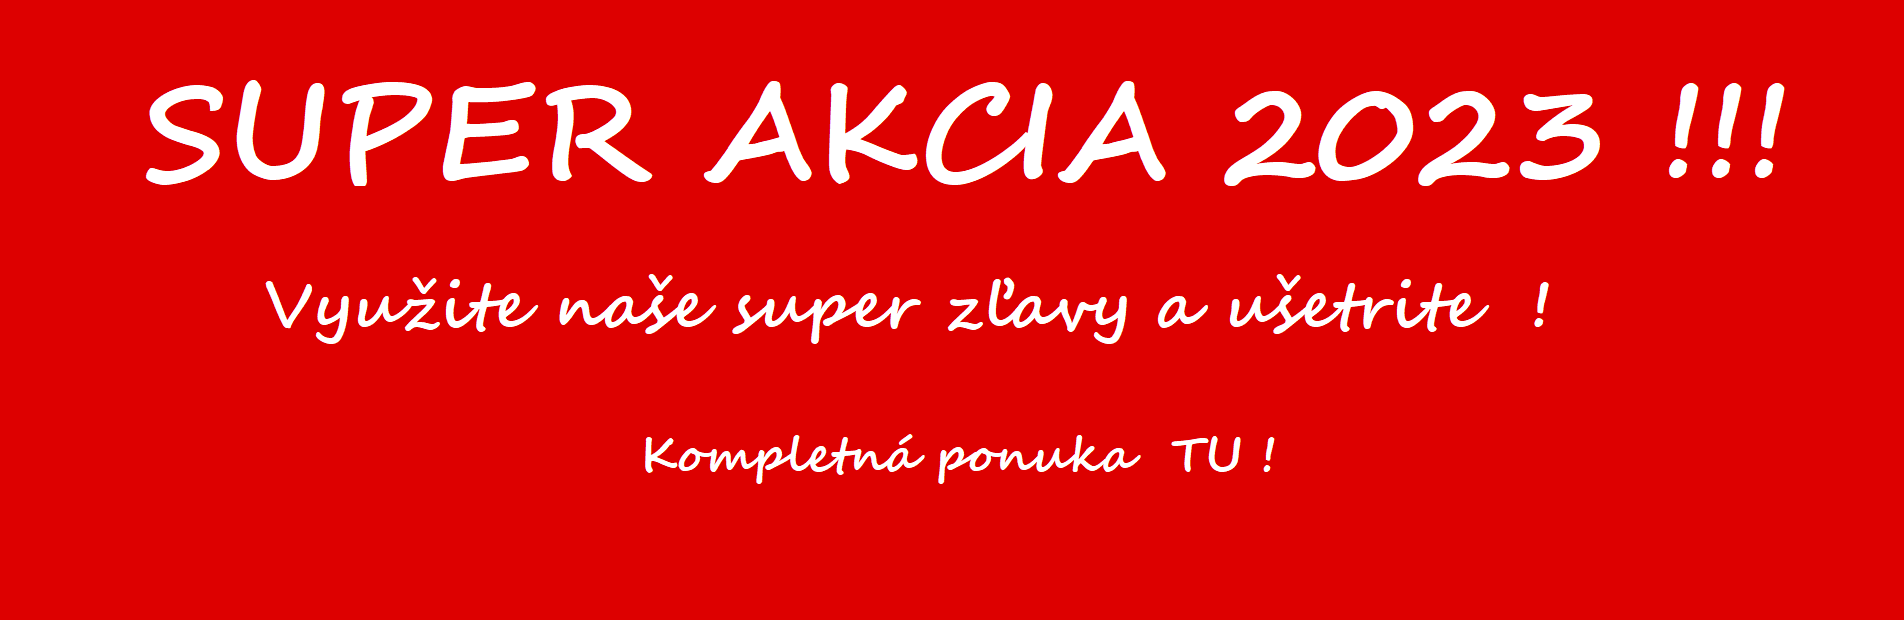 SUPER AKCIA 2023 !!!